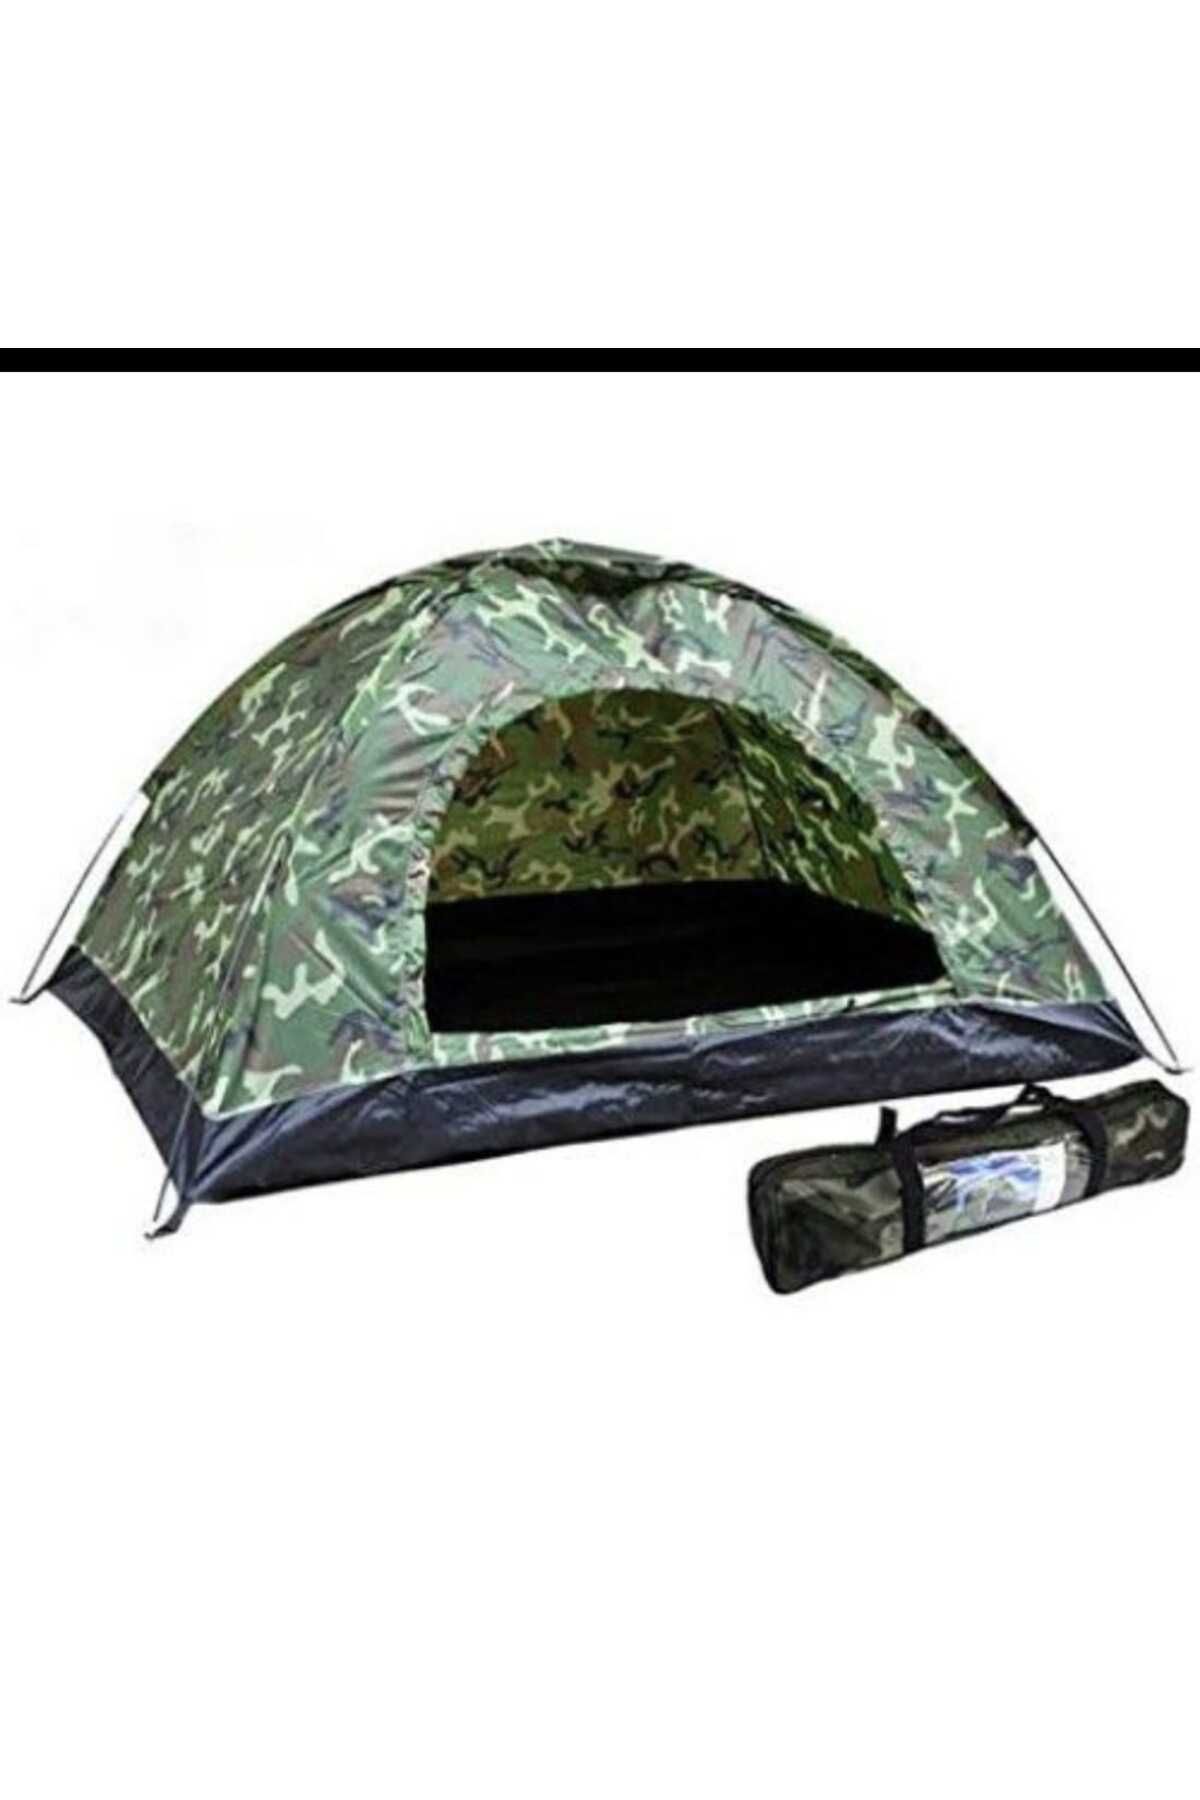 Zey Camping zeycamping 2 kişilik  askeri kamuflaj kolay kurulum kamp orman balıkcı avcı deniz çadırları